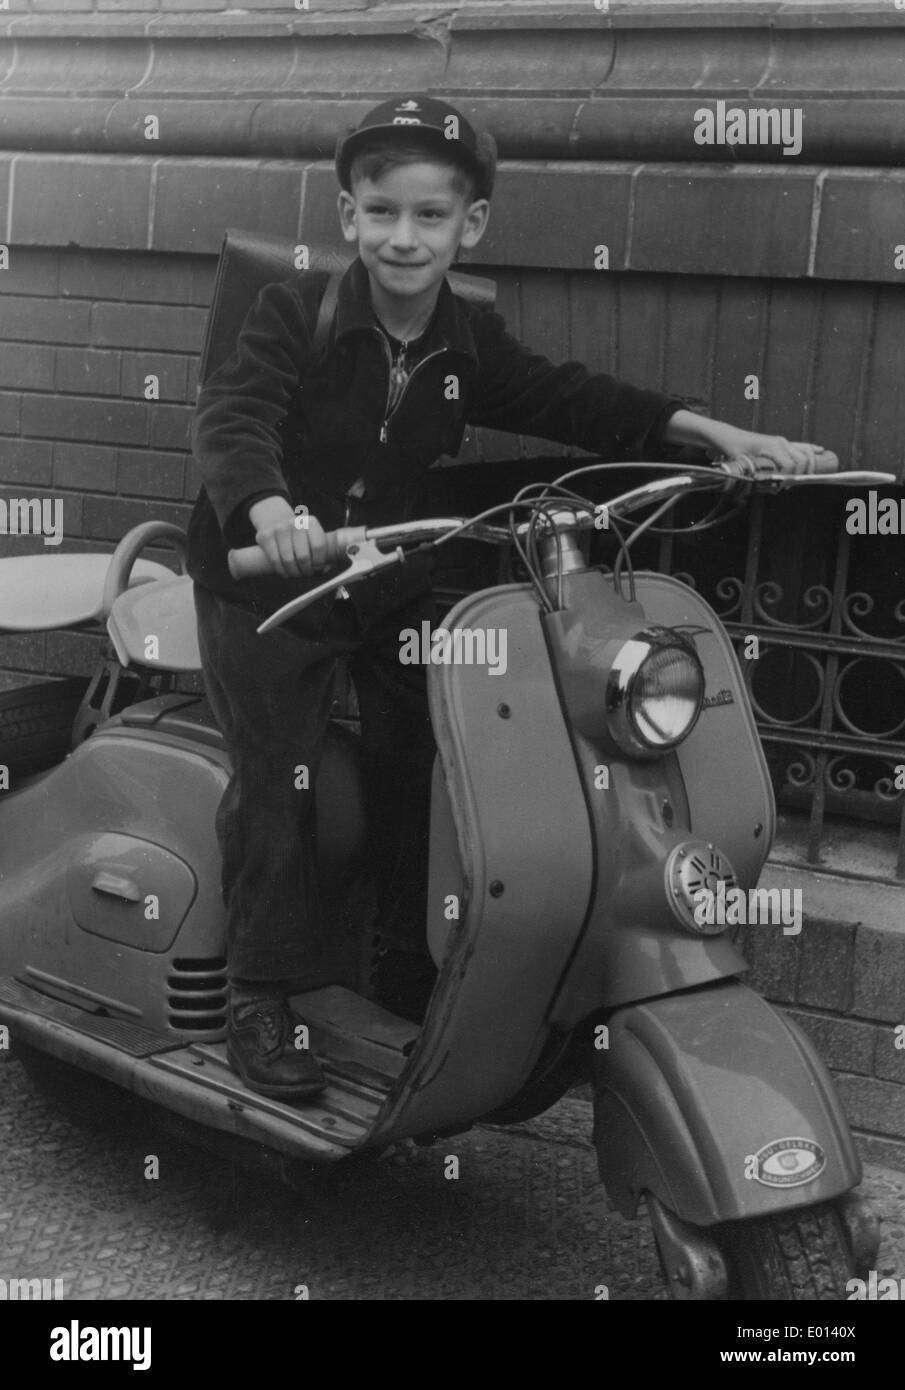 Un étudiant sur un scooter à Berlin, 1955 Banque D'Images